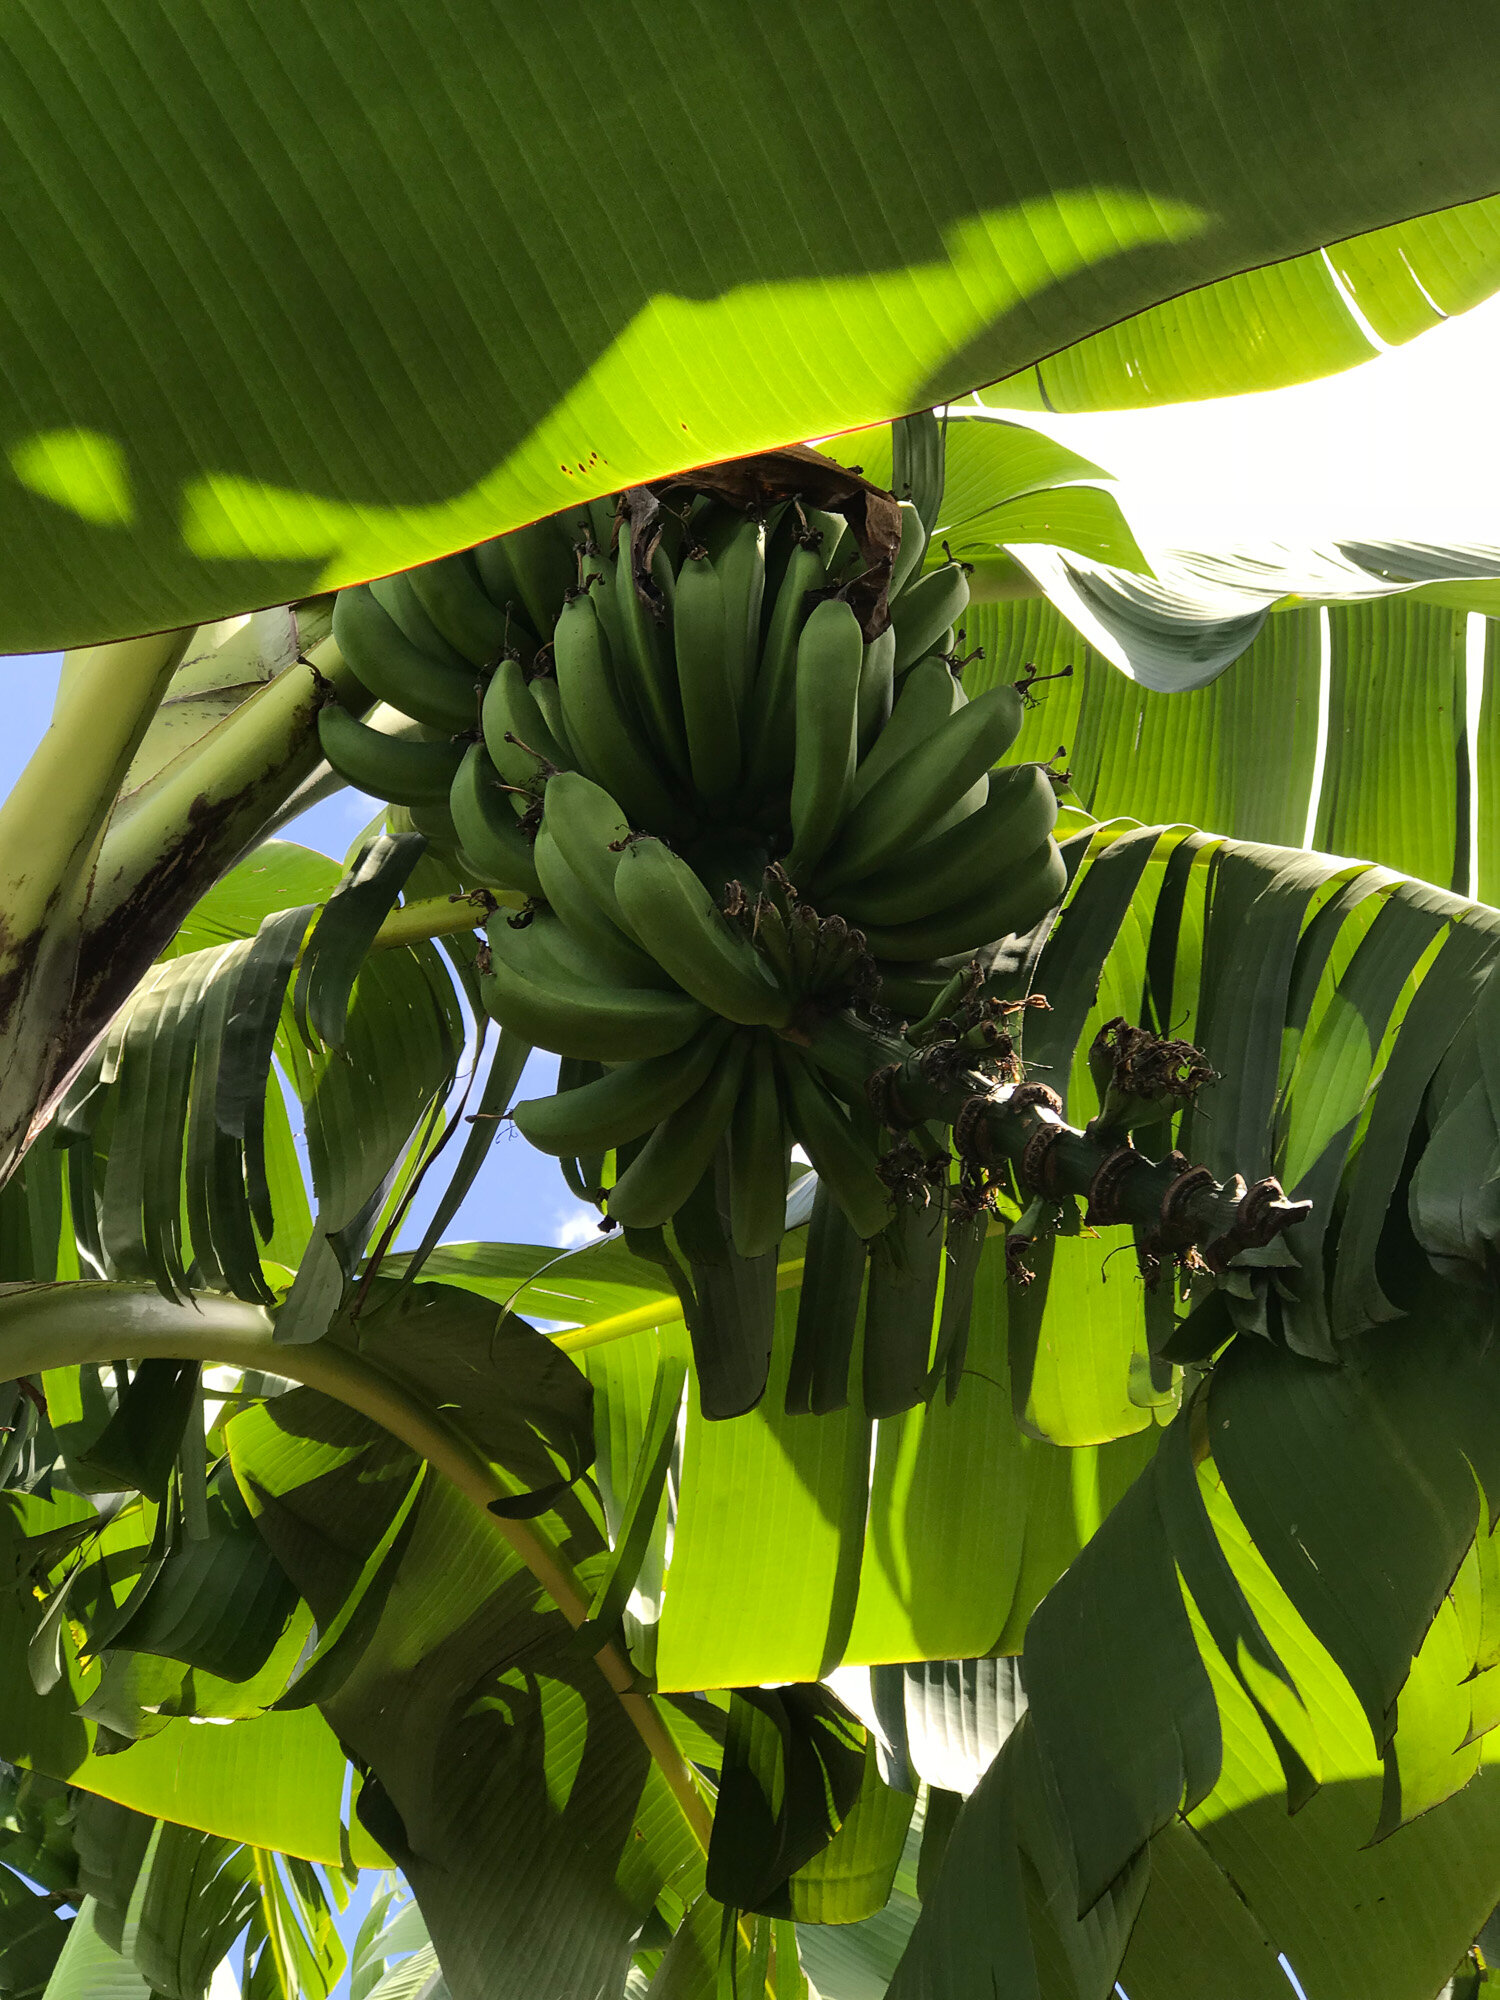 Banana trees.jpg